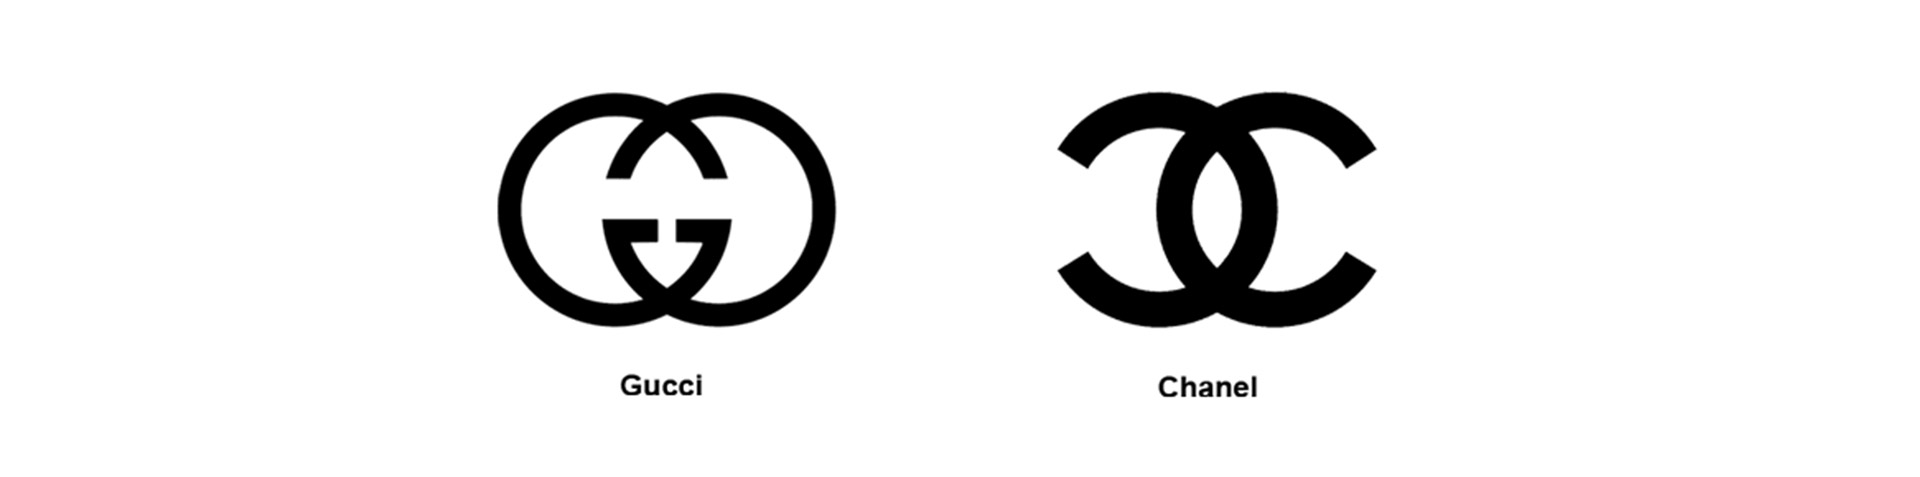 לוגו של חברות האופנה 'CHANEL' ו-'GUCCI'